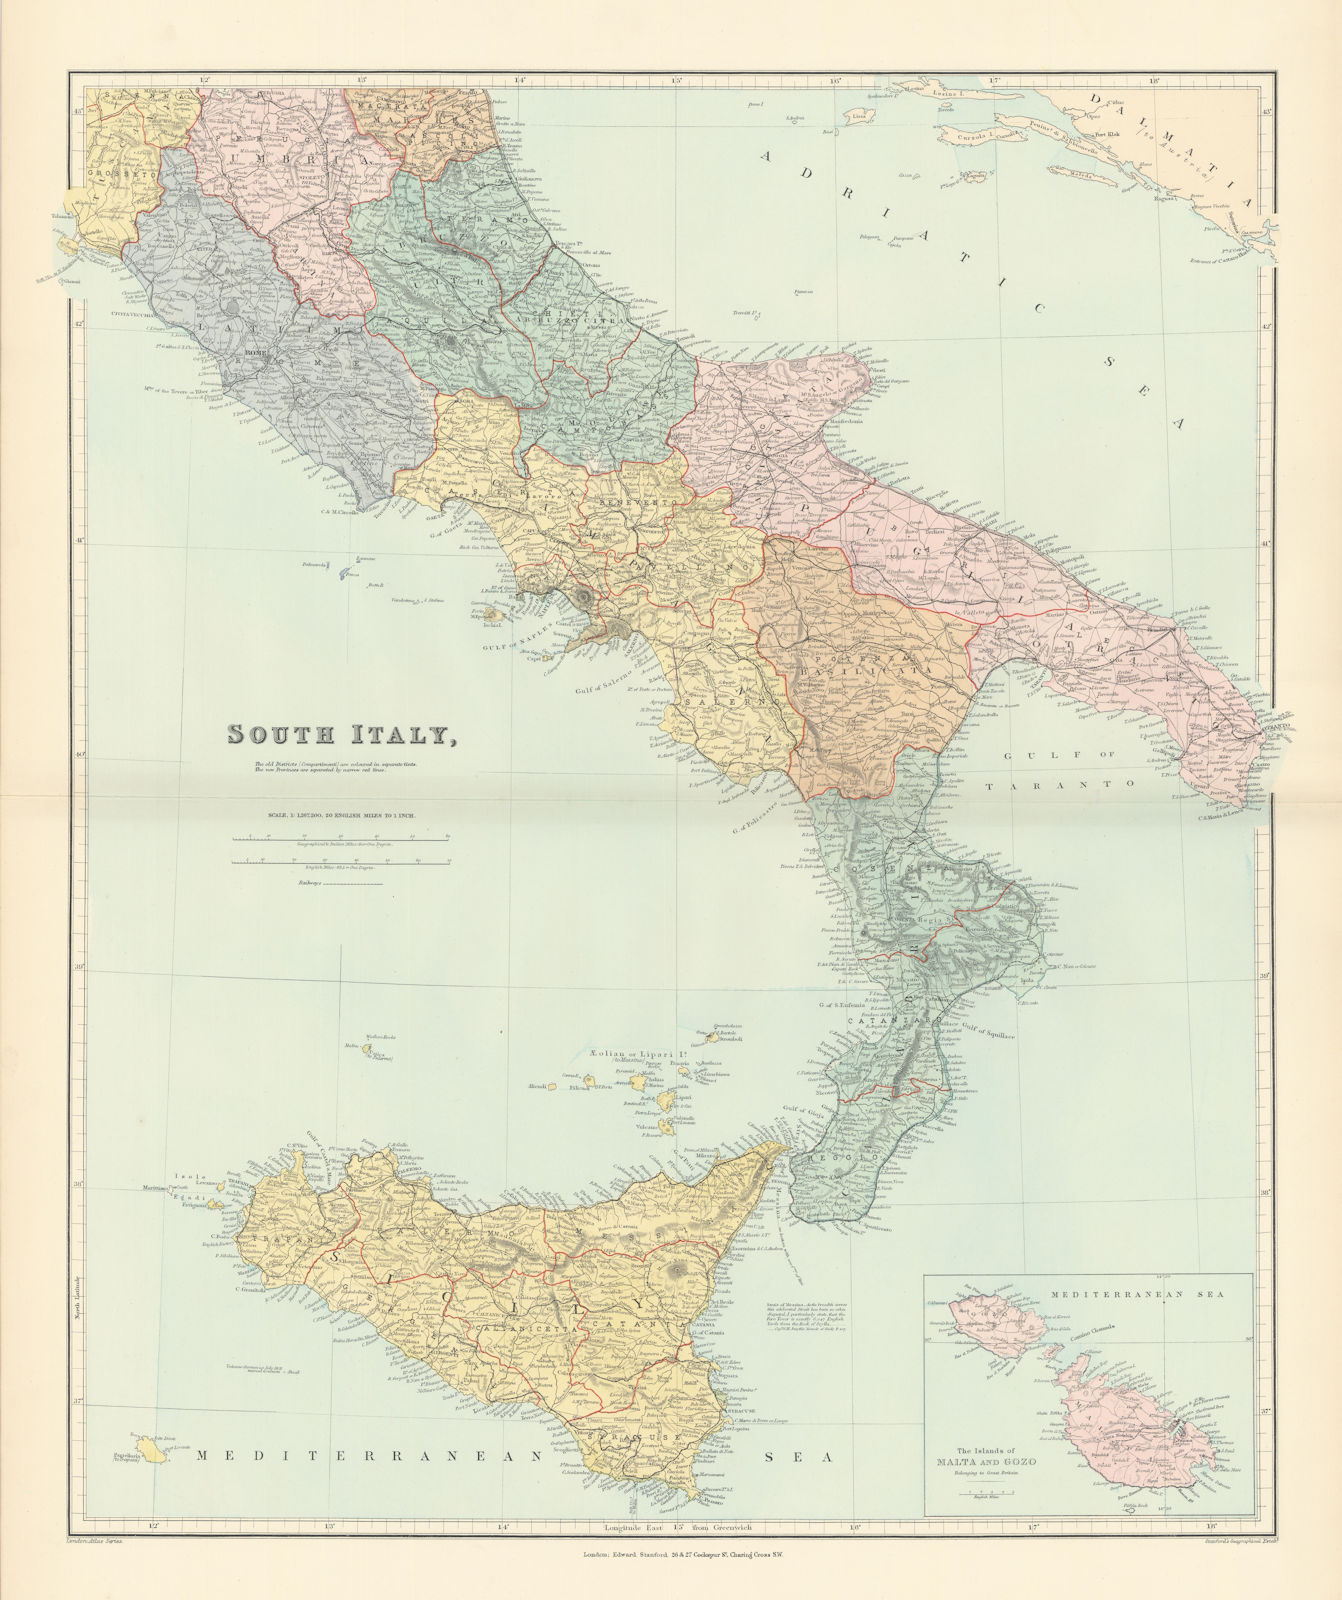 South Italy. Sicily Calabria Puglia Abruzzo Lazio Campania. STANFORD 1896 map